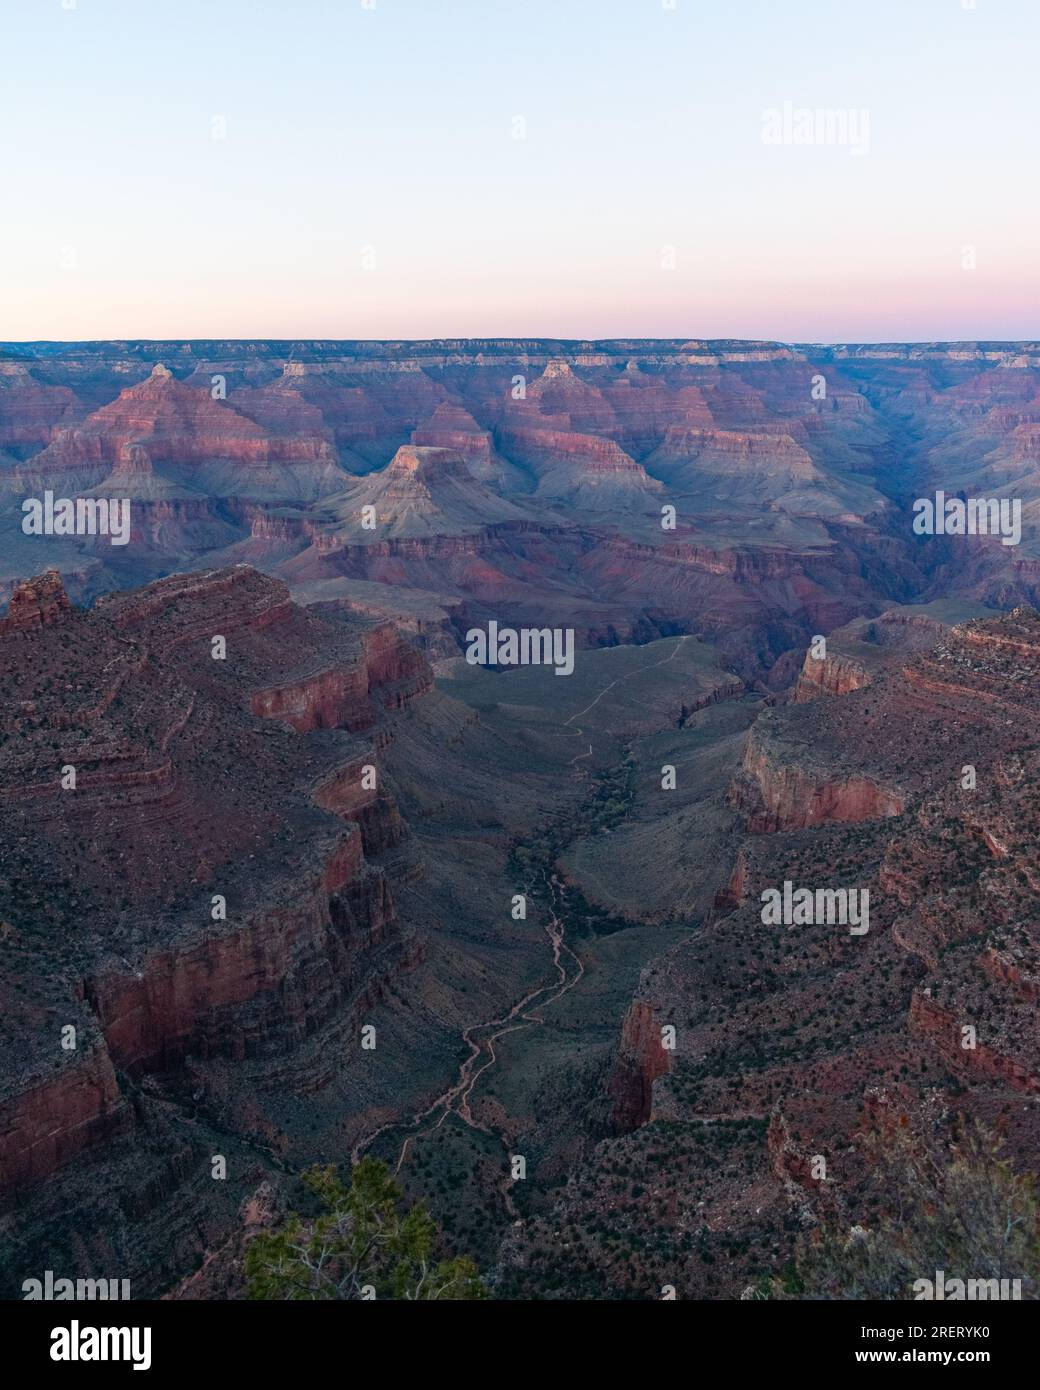 La sera scende sui sentieri tortuosi del Grand Canyon. Foto Stock